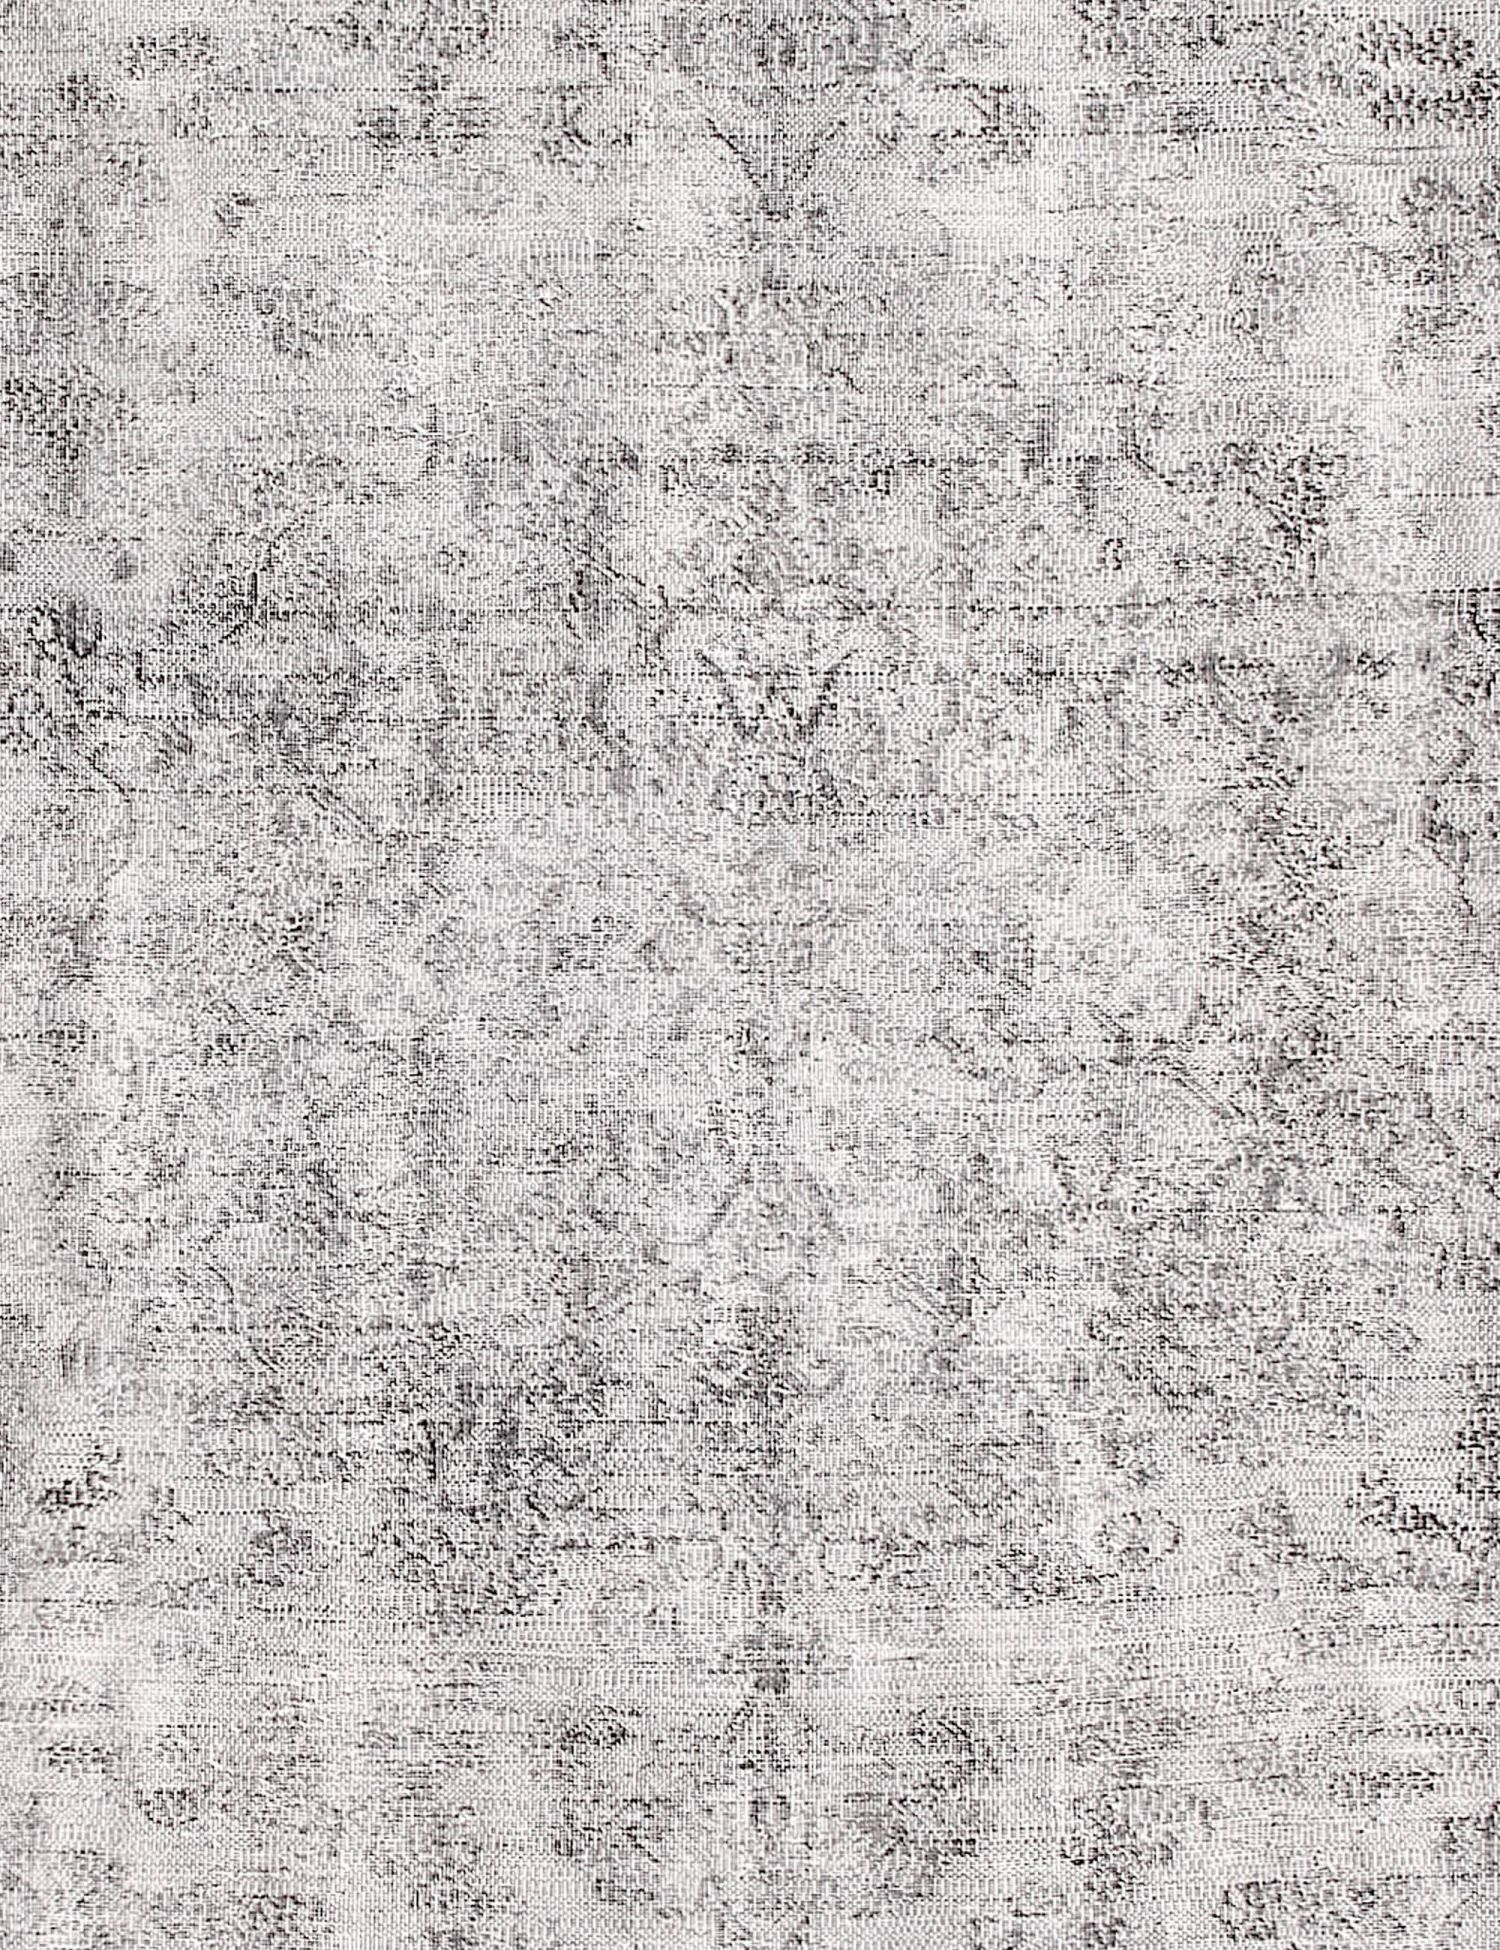 Rund  Vintage Teppich  grau <br/>220 x 220 cm